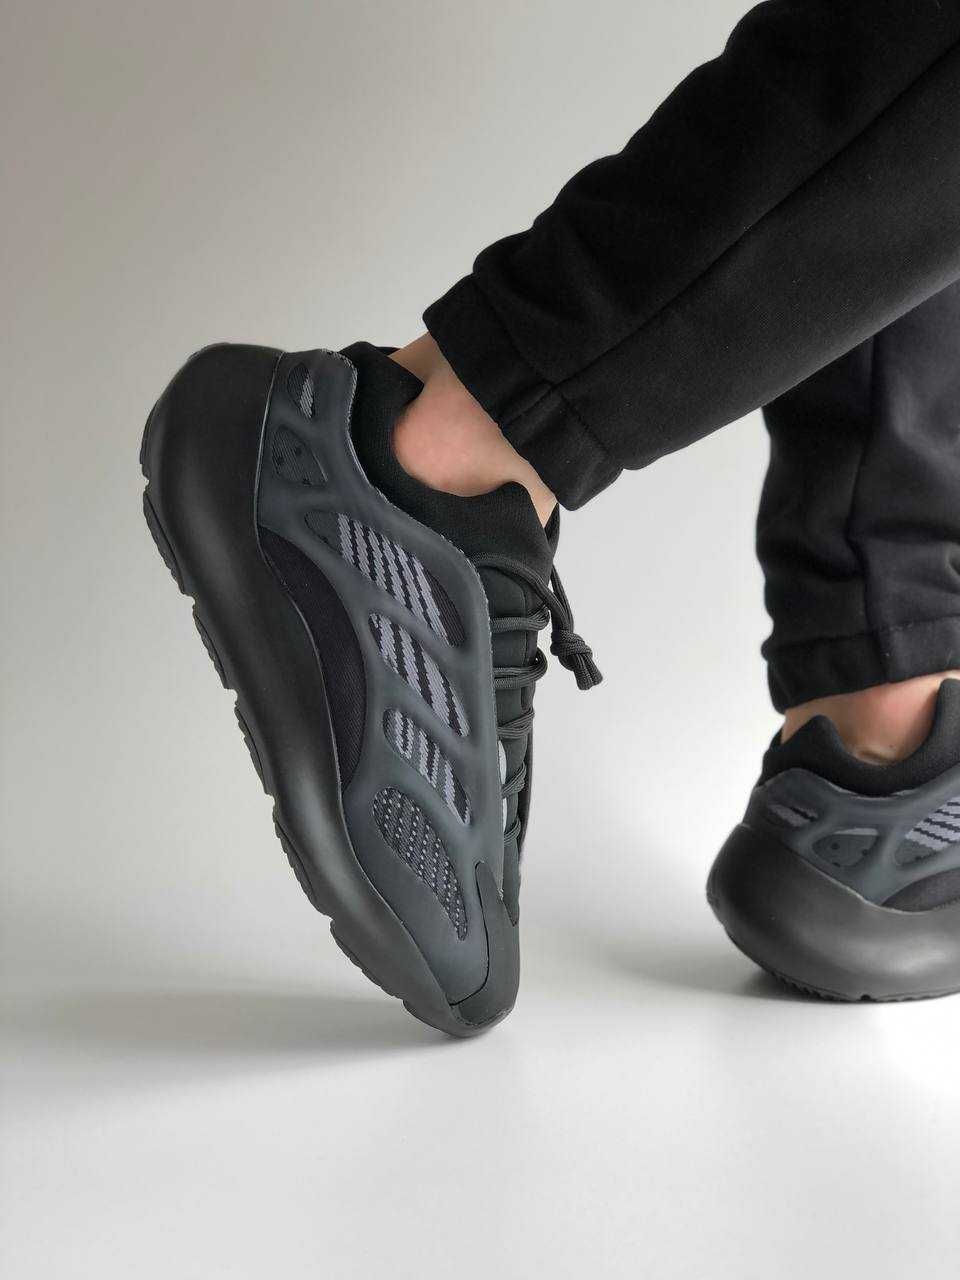 Чоловічі кросівки Adidas Yeezy boost 700 v.3 чорні всі розміри 36-45